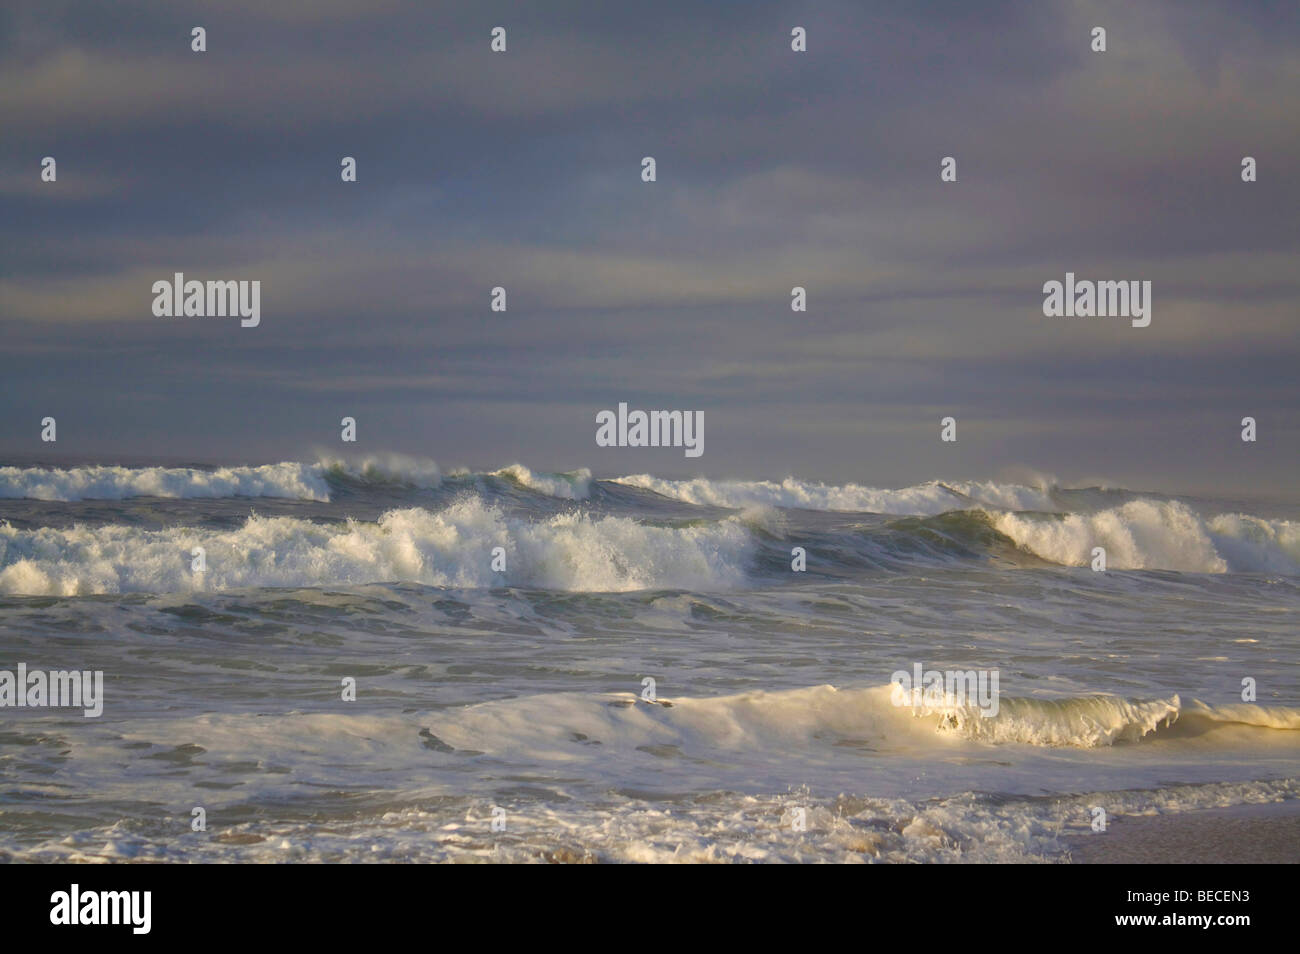 Oceano onde che si infrangono sulla spiaggia Foto Stock